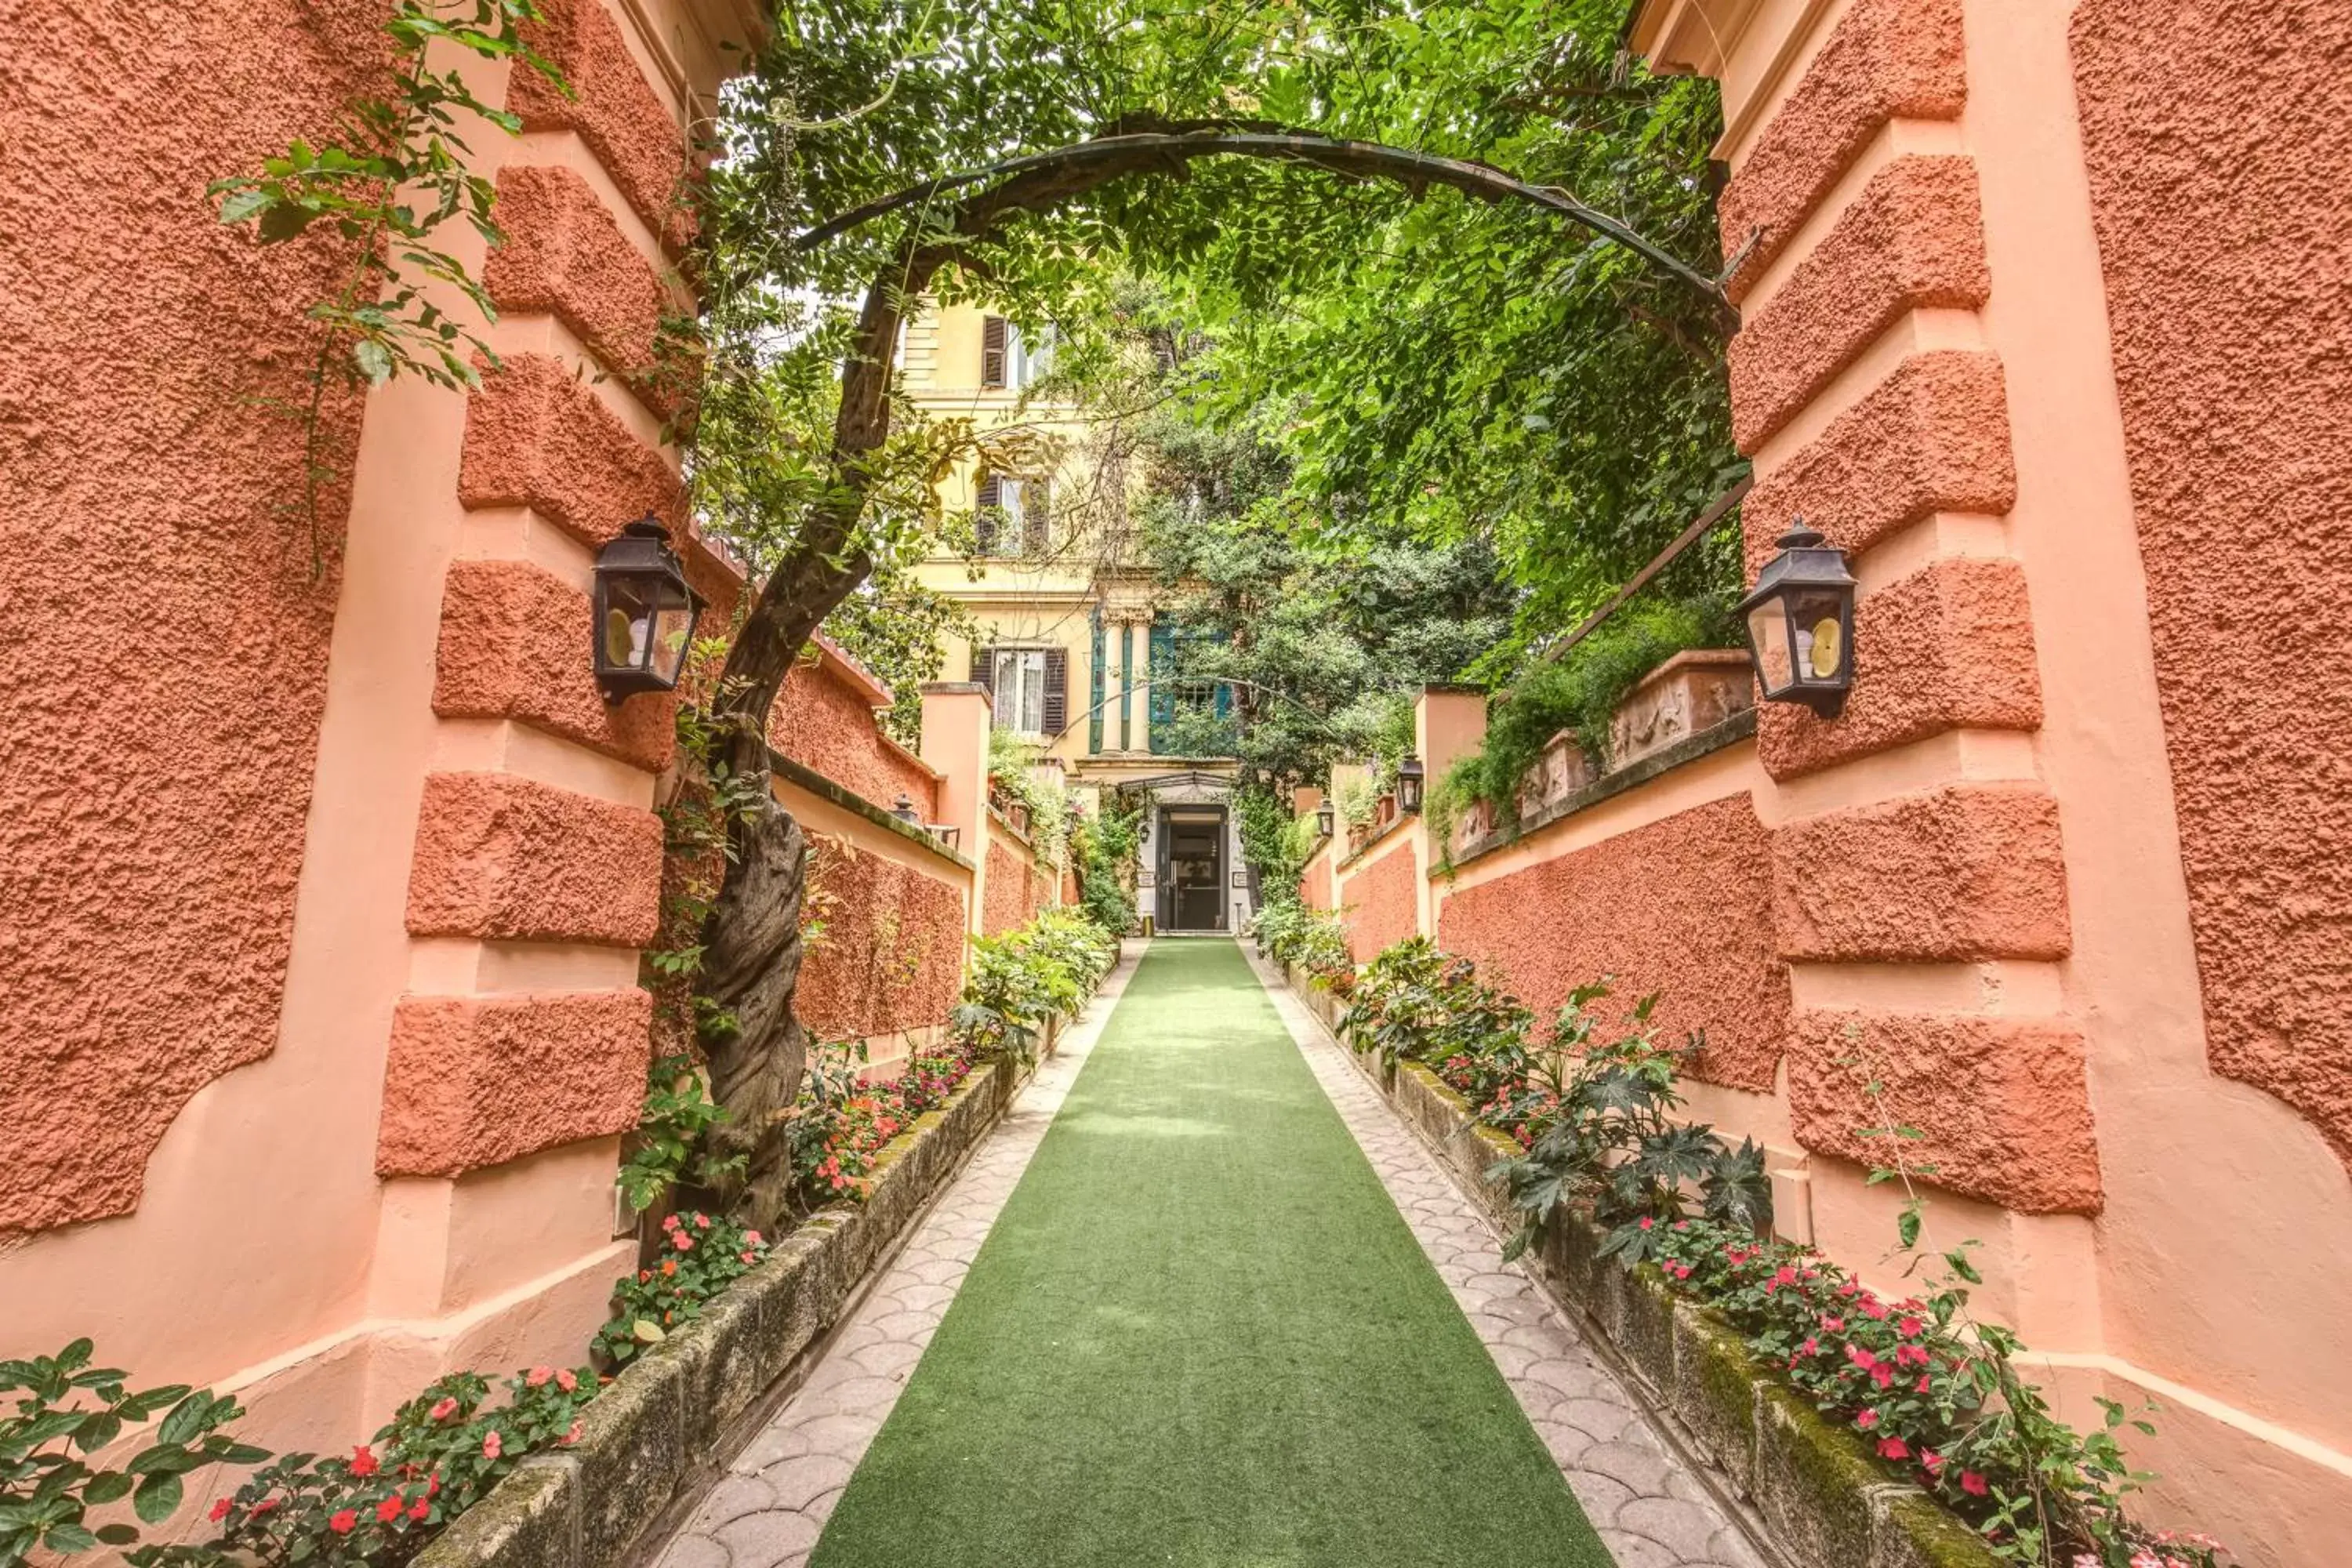 Facade/entrance in Rome Garden Hotel